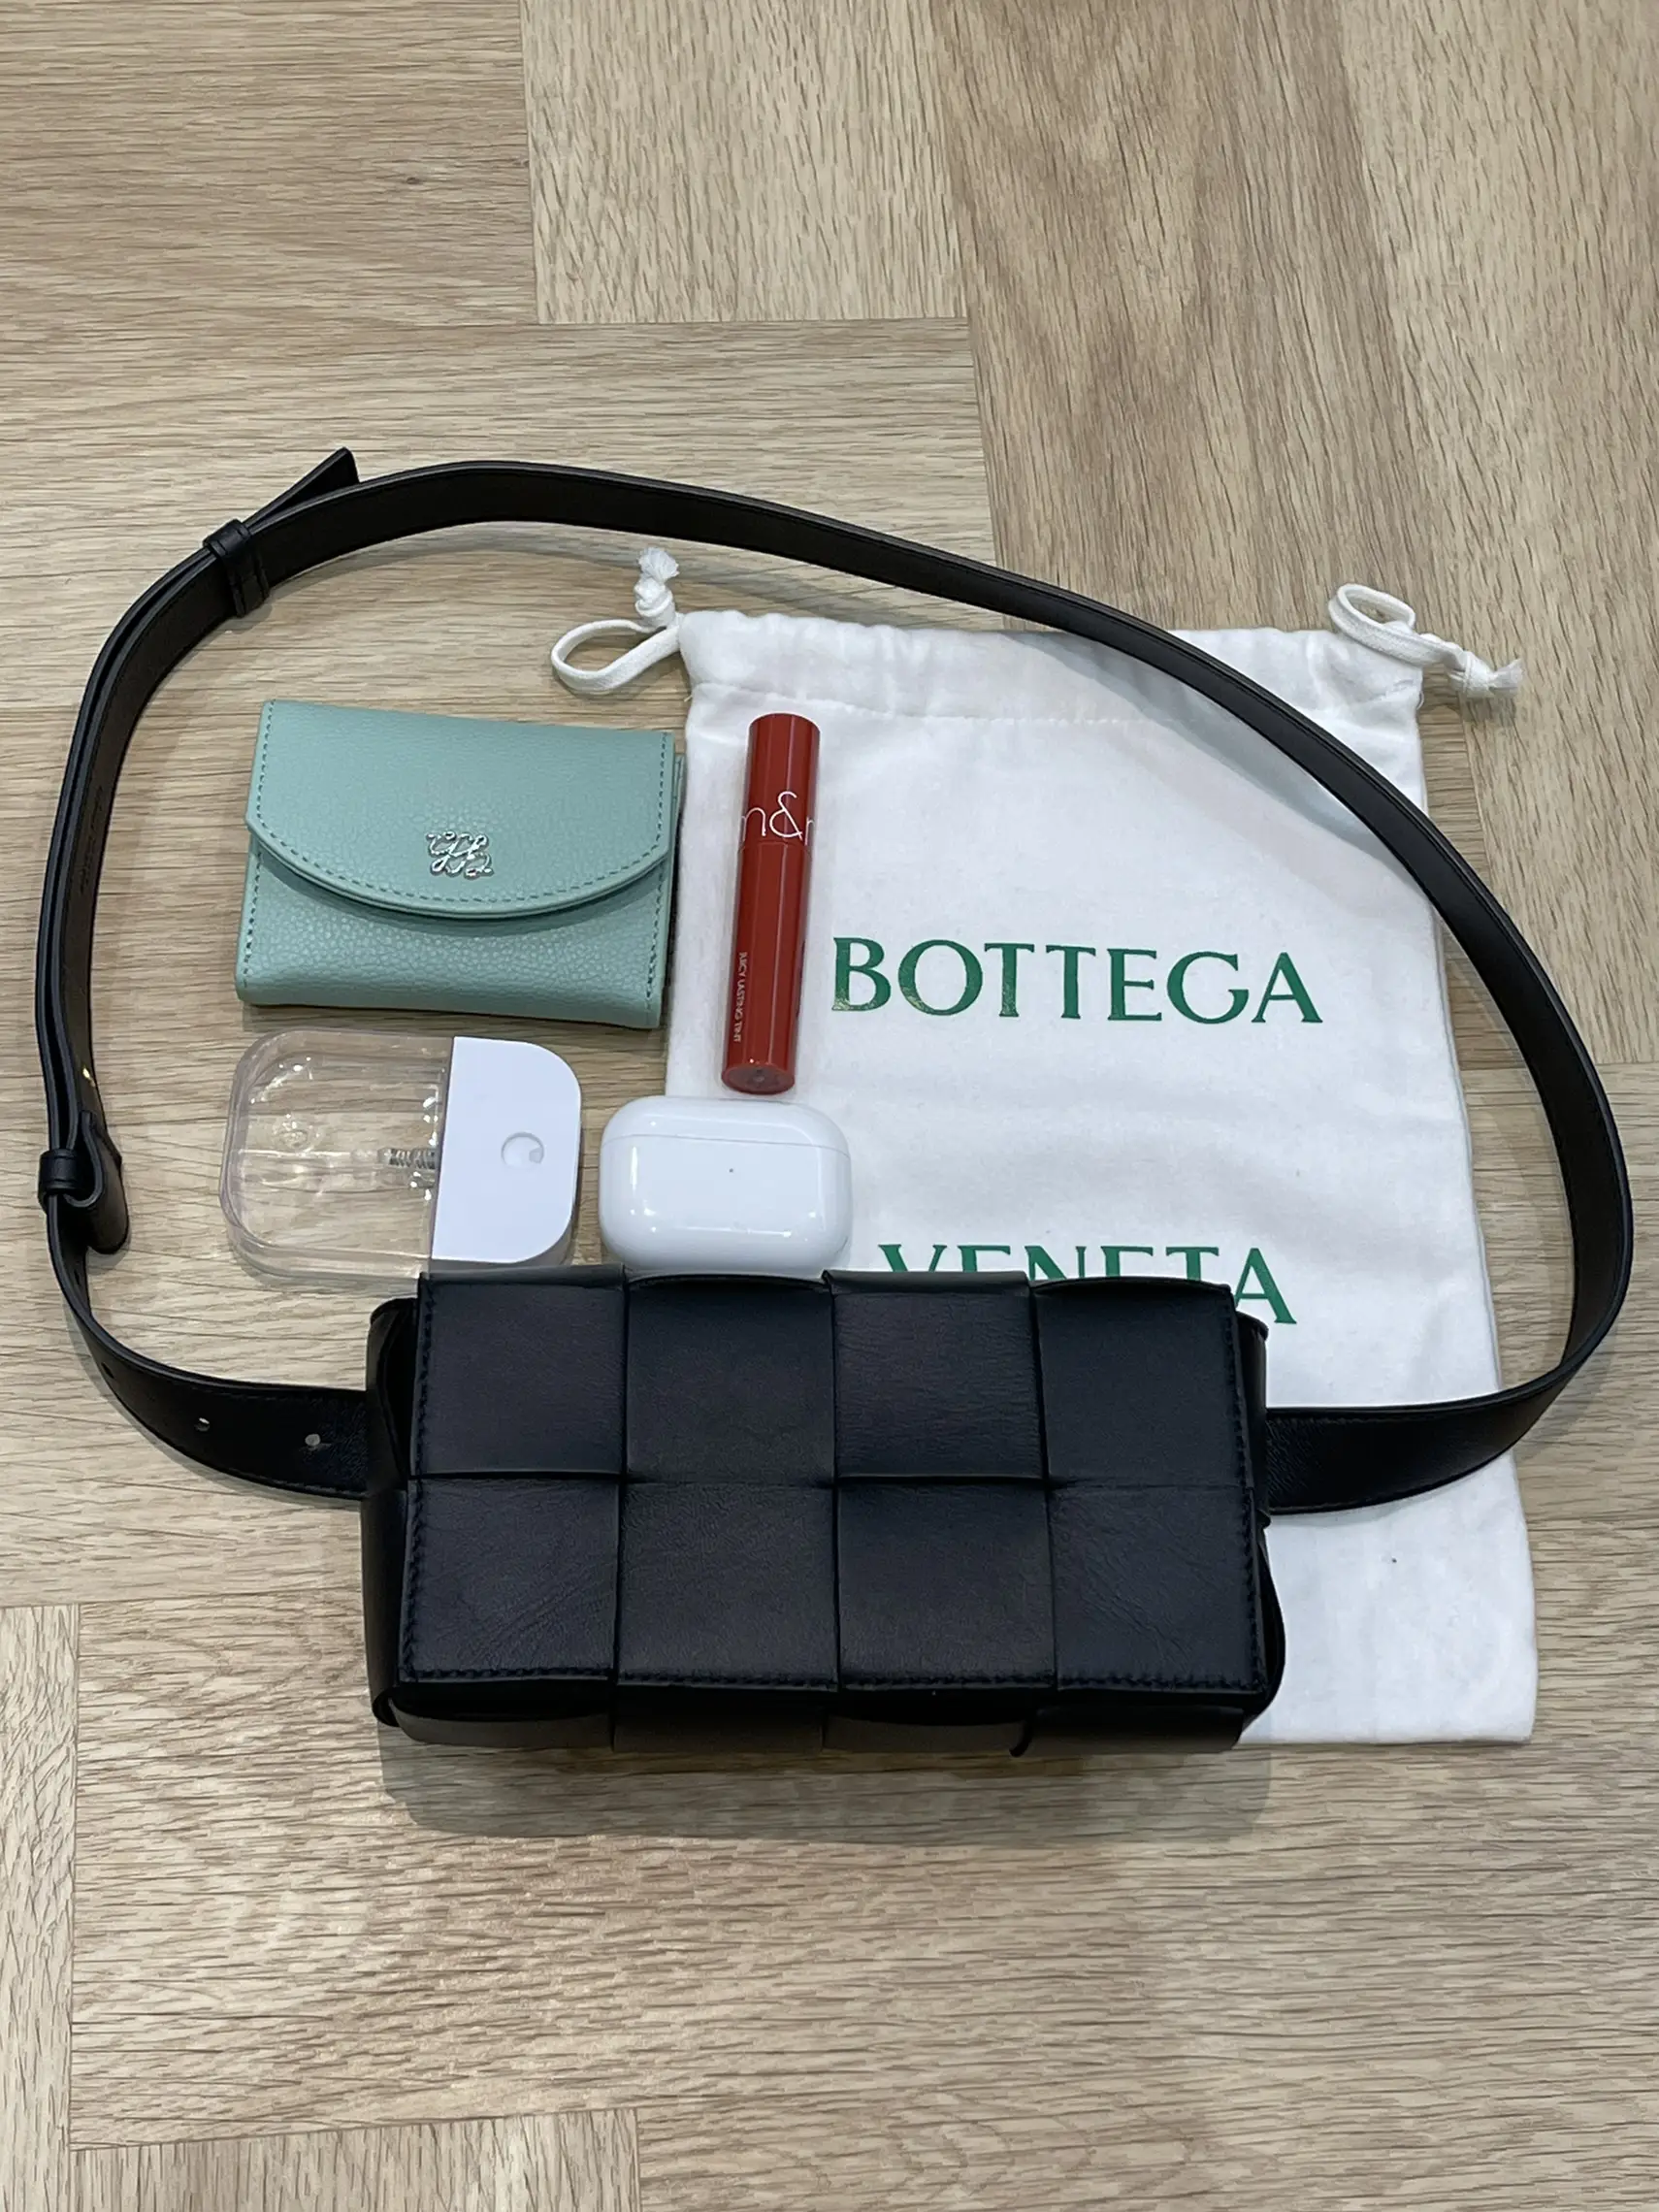 My Honest Review of The Bottega Veneta Chain Cassette Bag